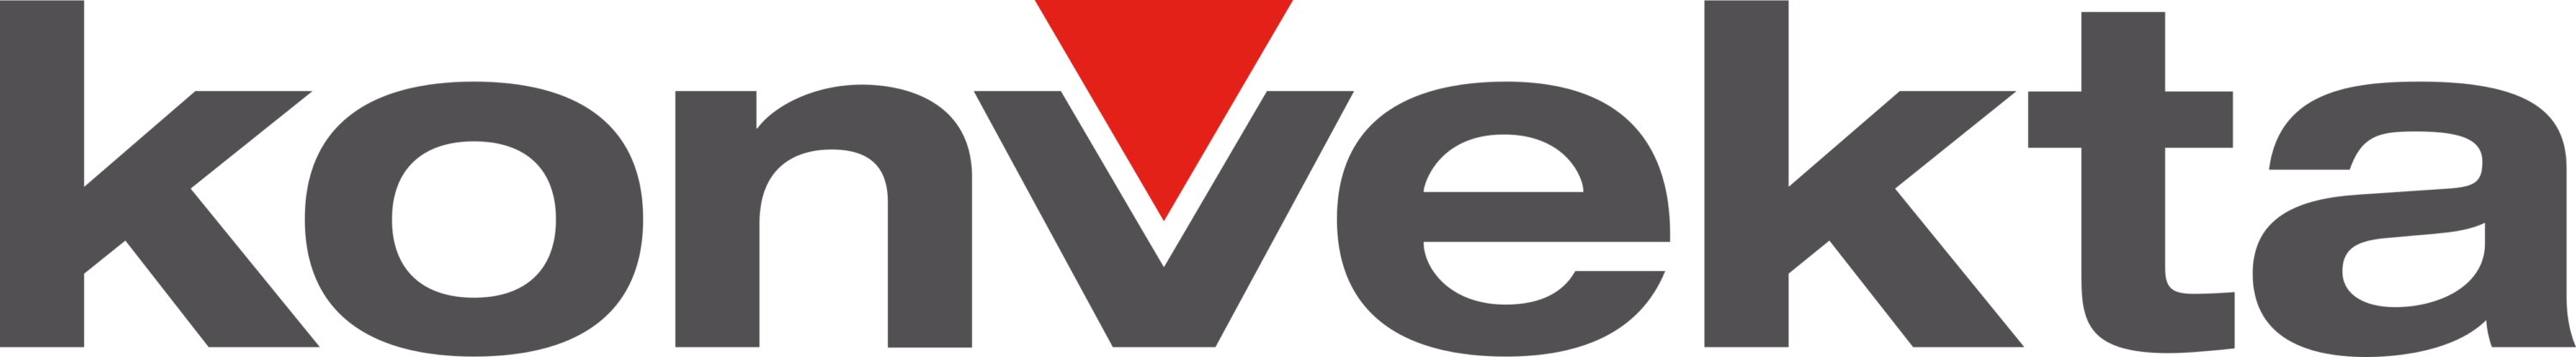 Konvekta Logo